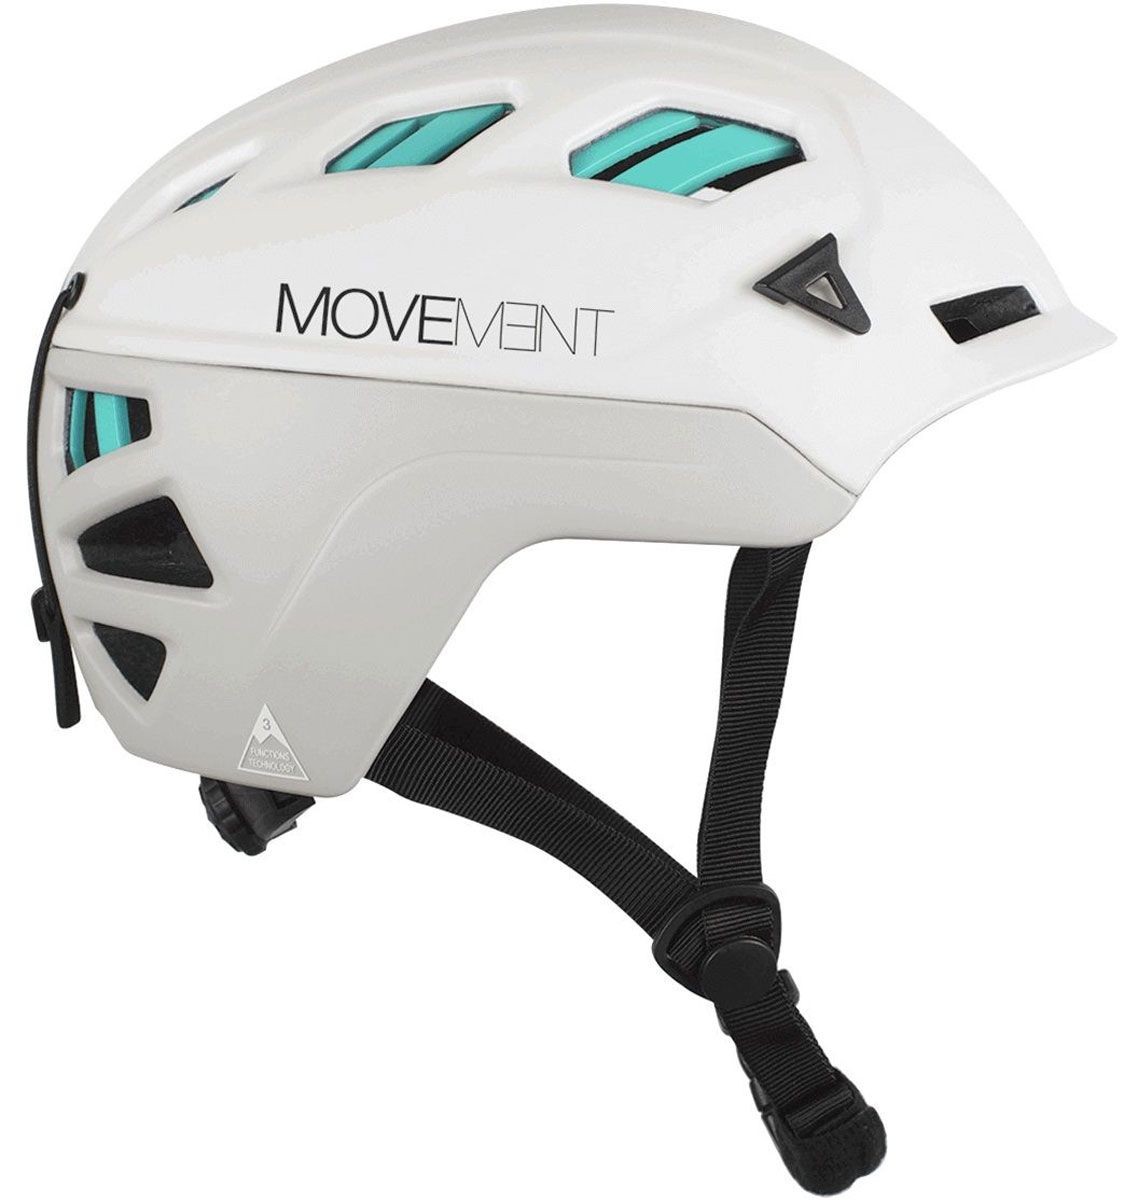 Movement 3Tech Alpi W, casco triple homologación: esquí, escalada, ciclismo